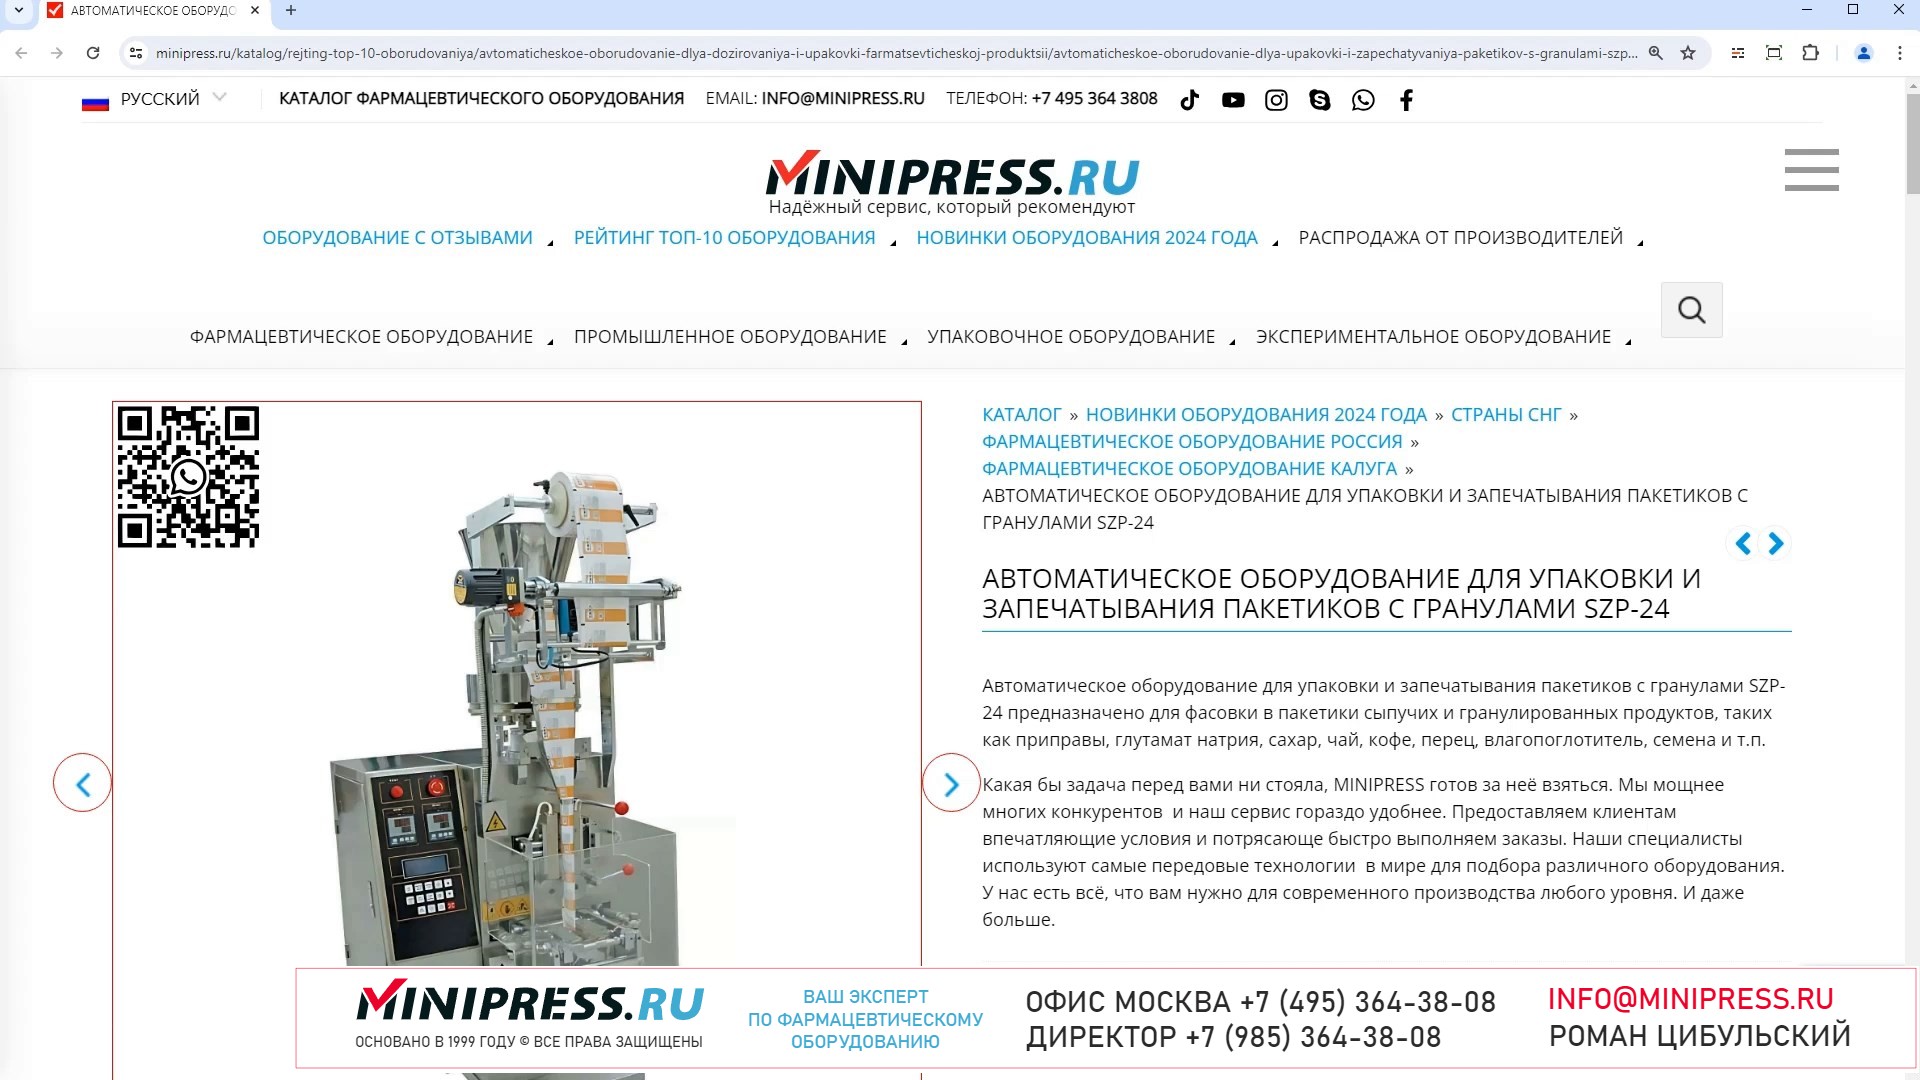 Minipress.ru Автоматическое оборудование для упаковки и запечатывания пакетиков с гранулами SZP-24